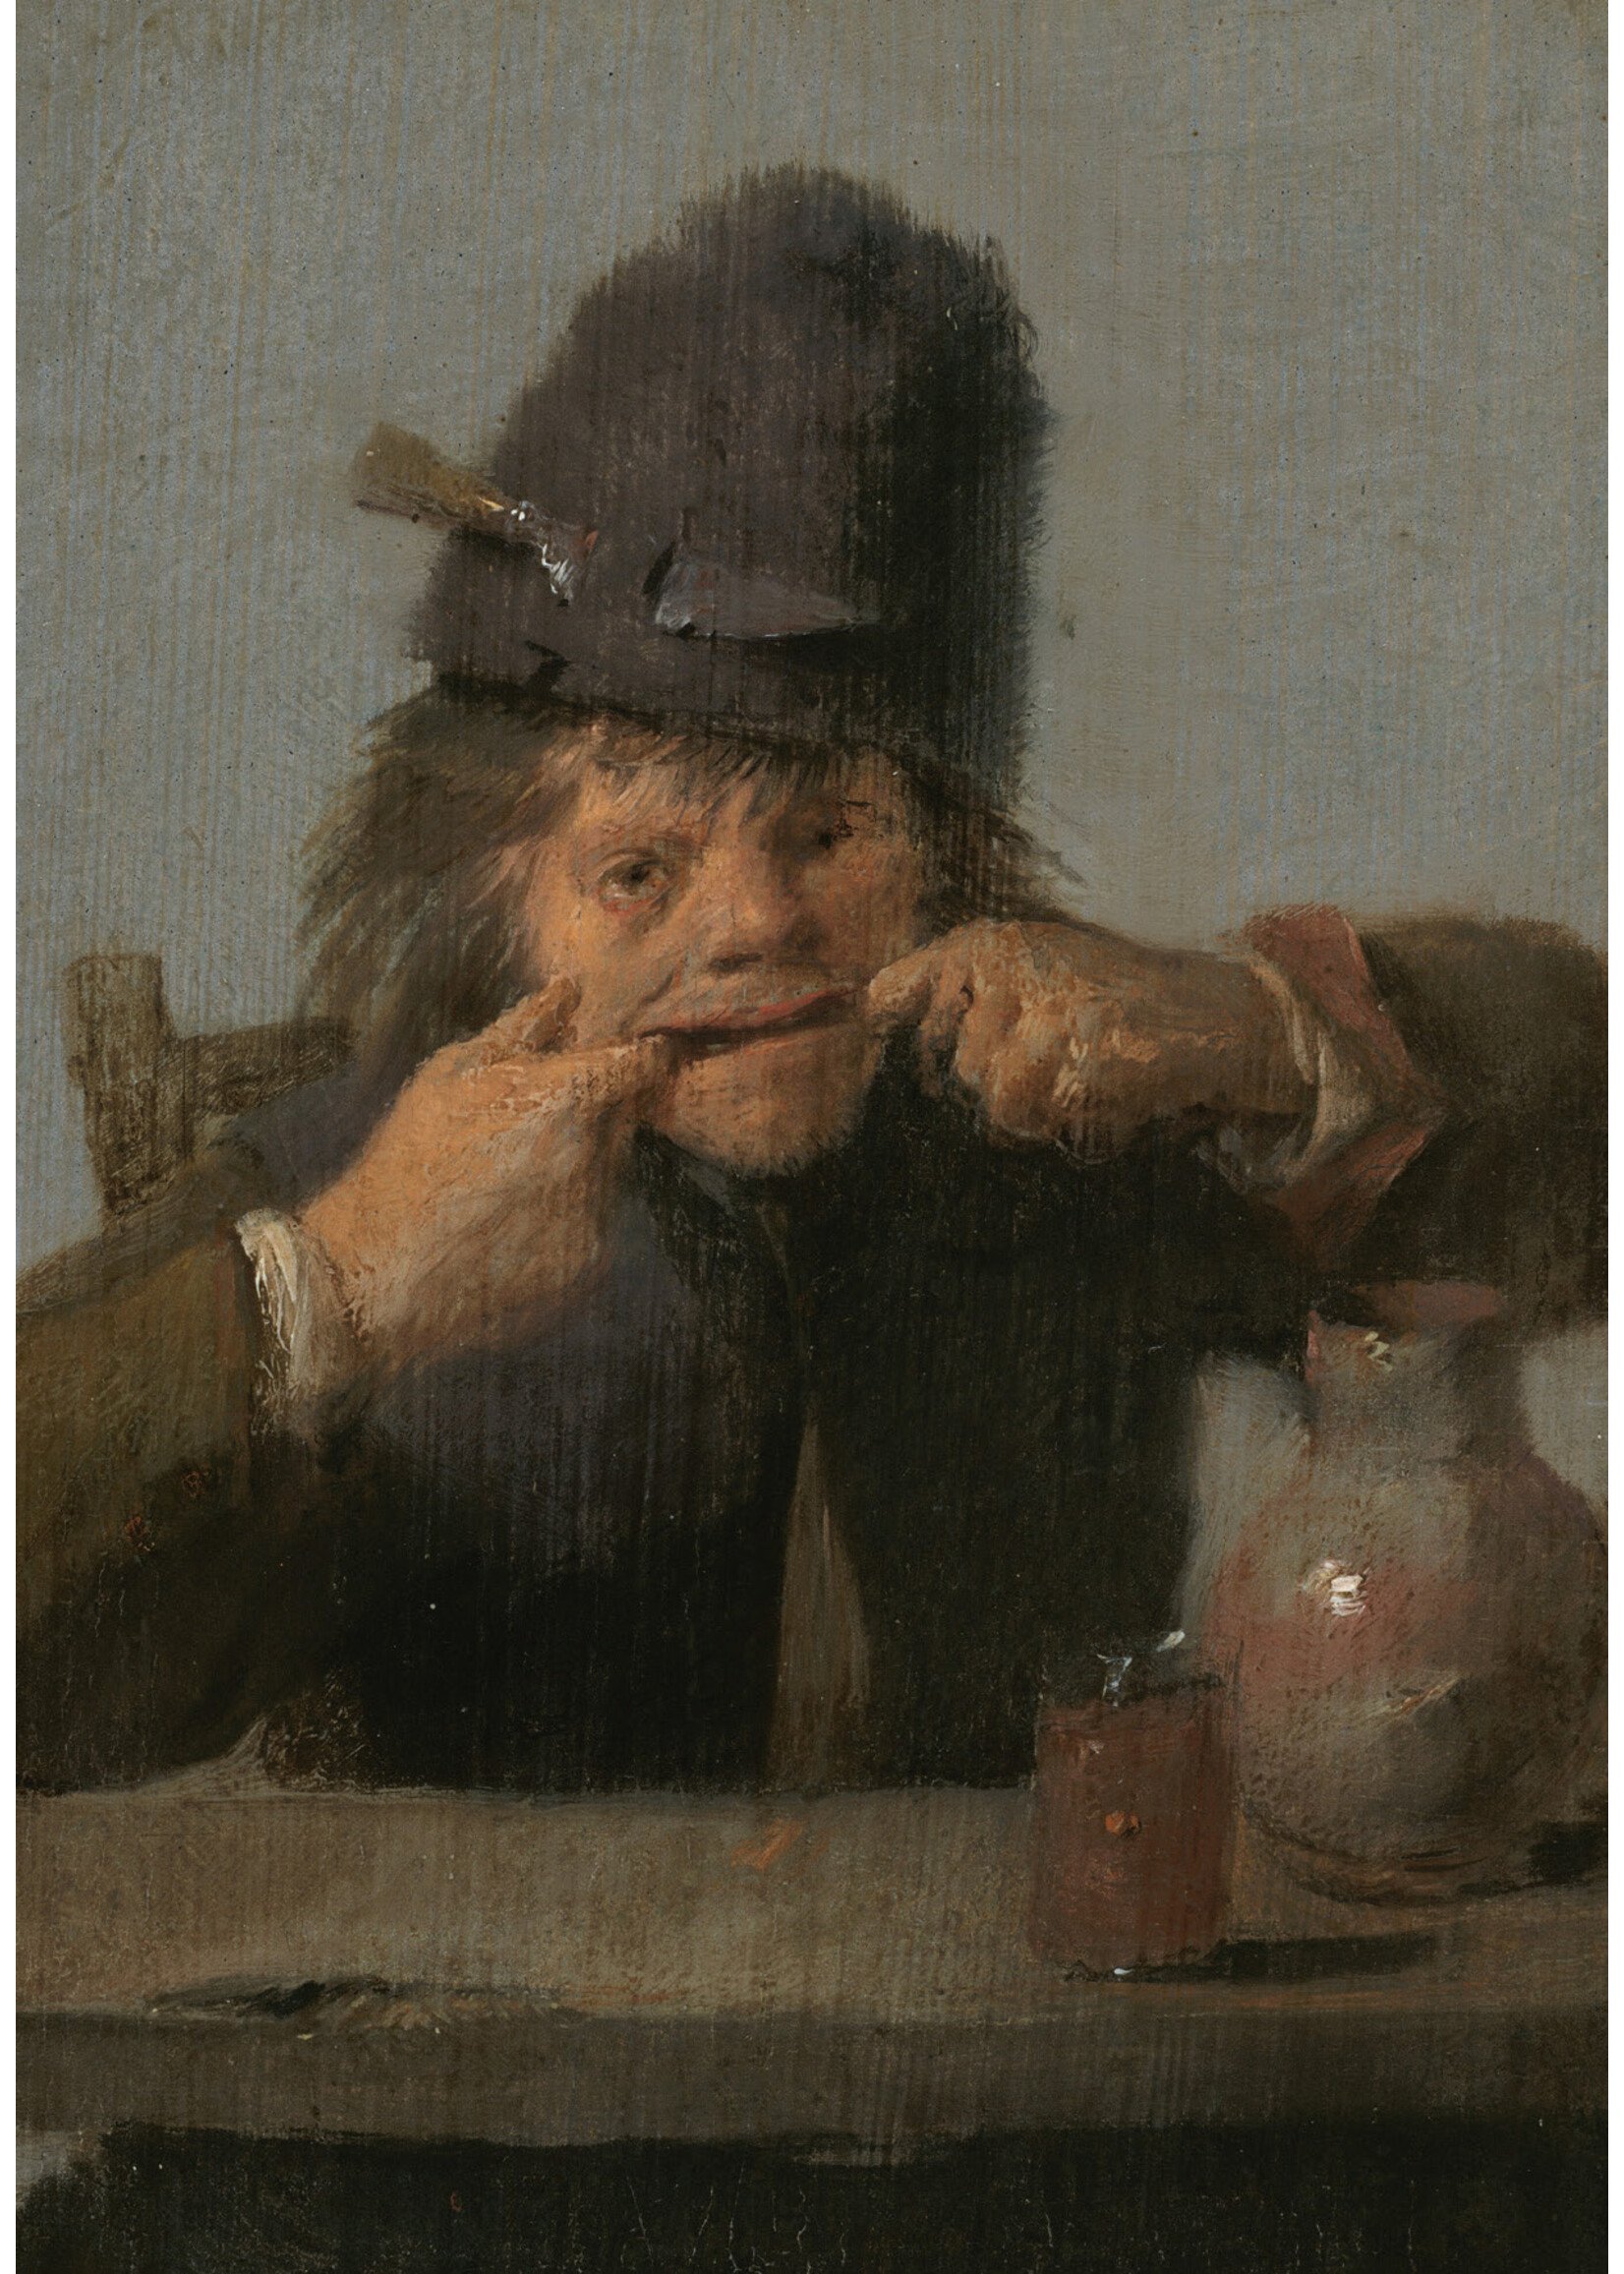 krasse koppen Adriaen Brouwer, Youth Making a Face, c. 1632-1635